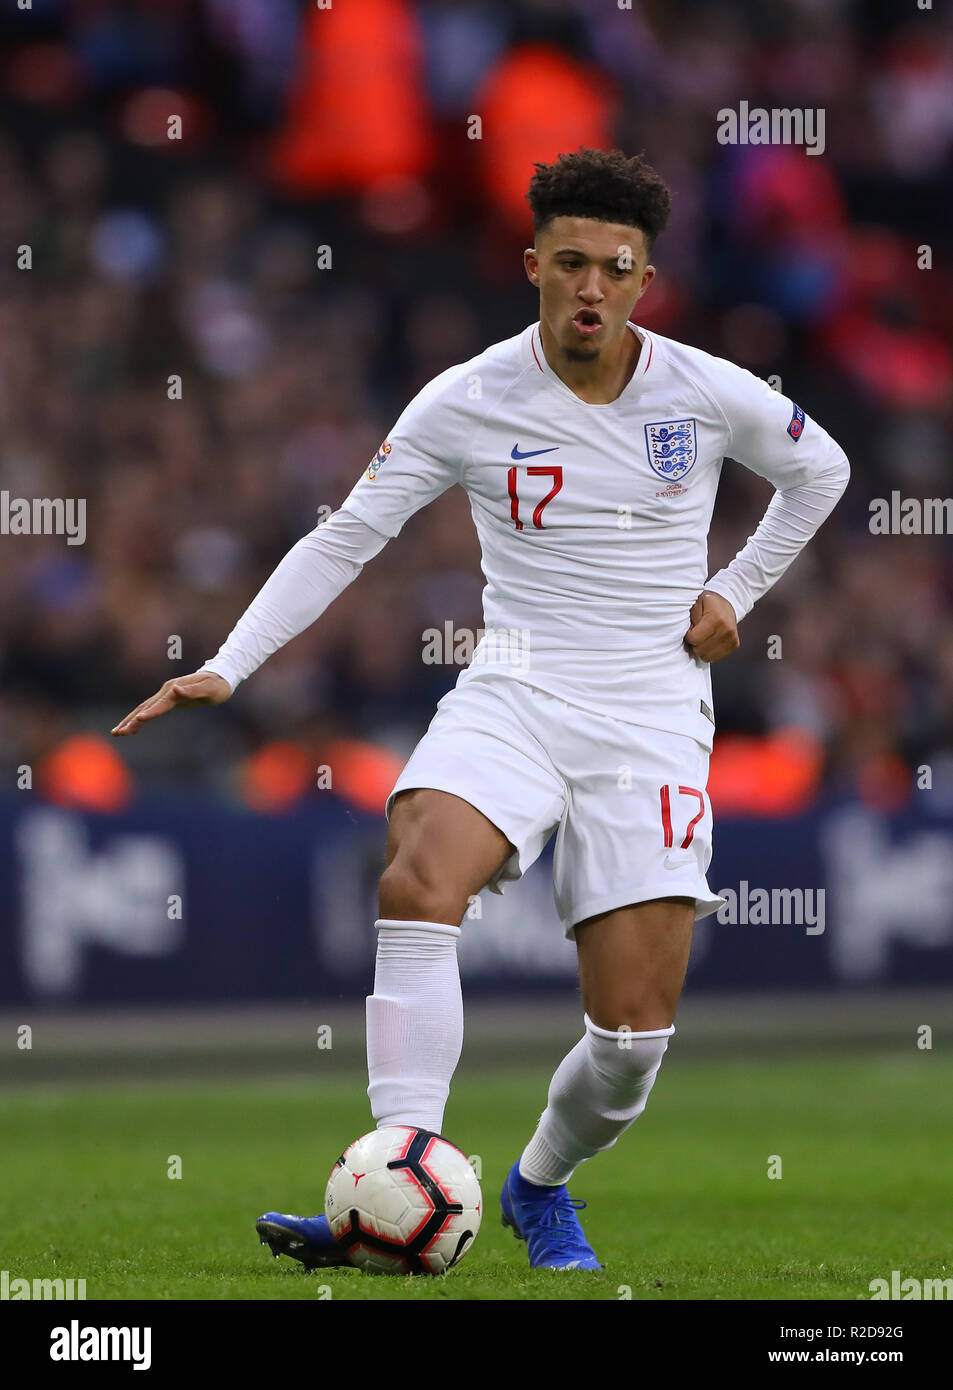 Jadon Sancho di Inghilterra - Inghilterra v Croazia, nazioni UEFA League - Gruppo A4, lo Stadio di Wembley, London - 18 novembre 2018 Foto Stock